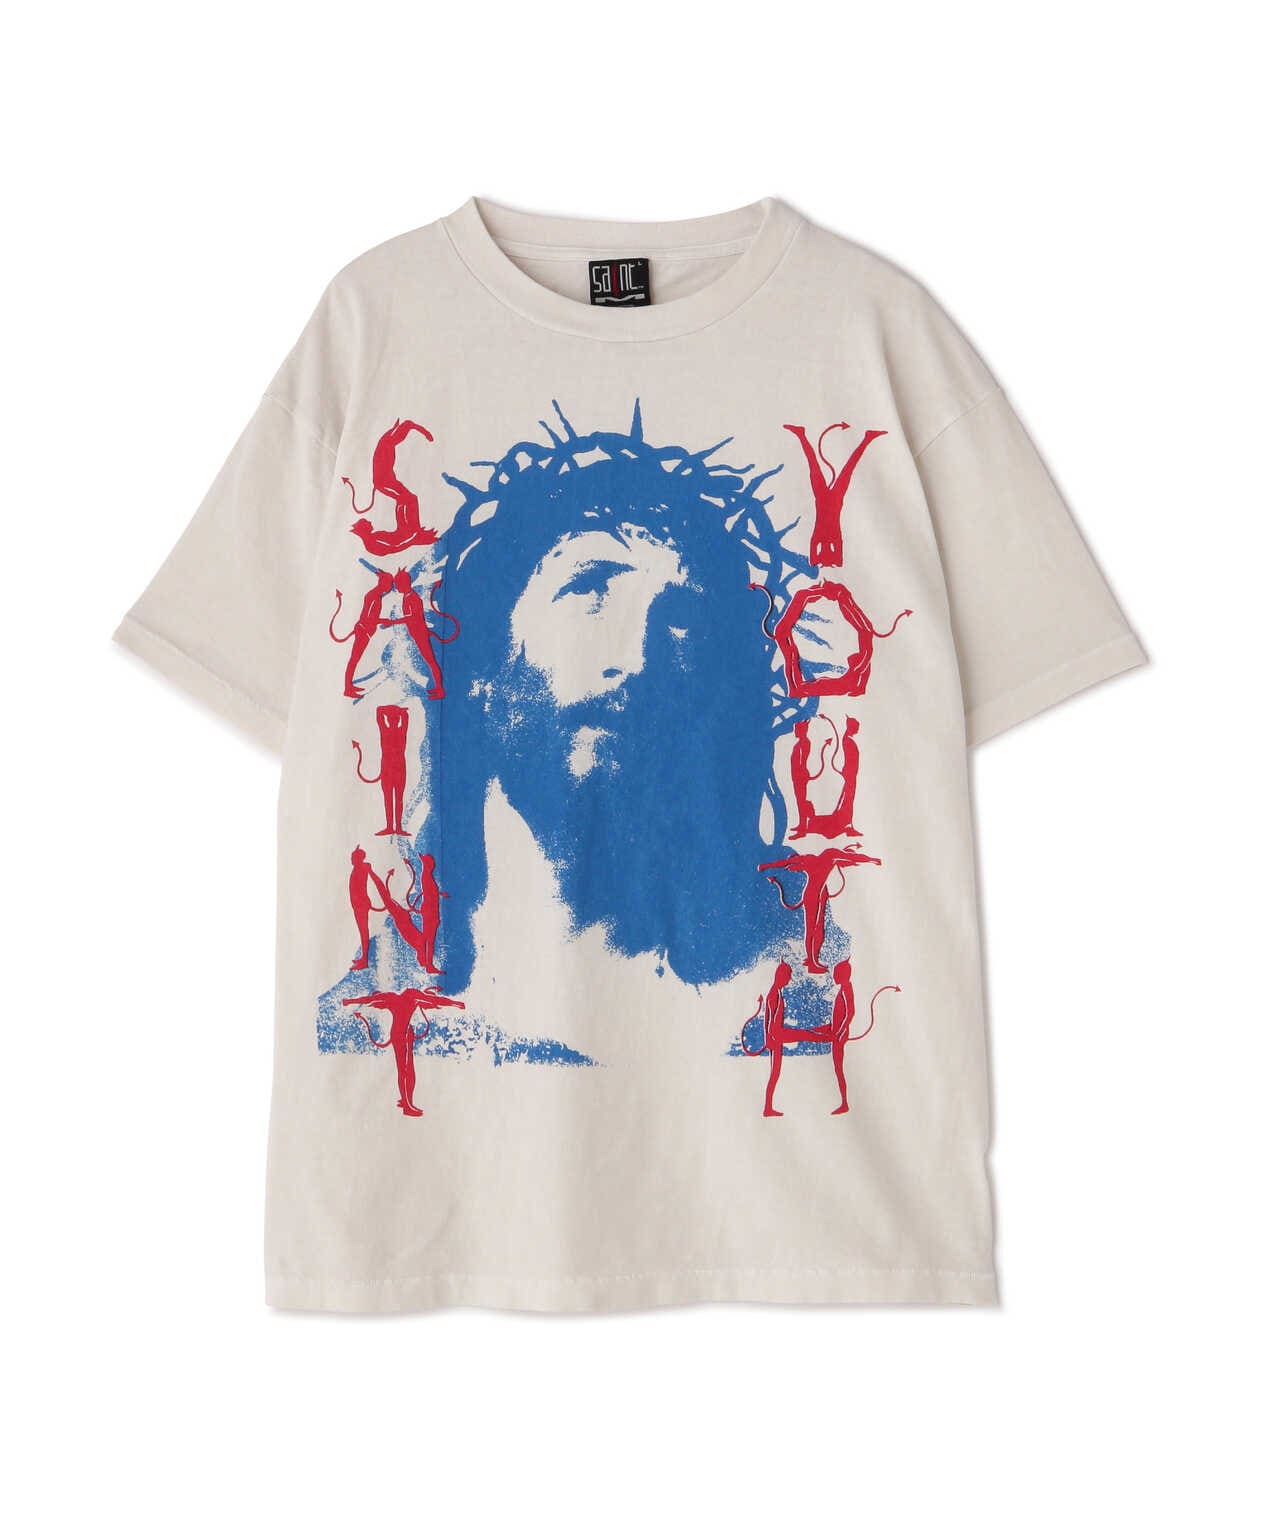 Saint michael セントマイケル saint youth Tシャツ S